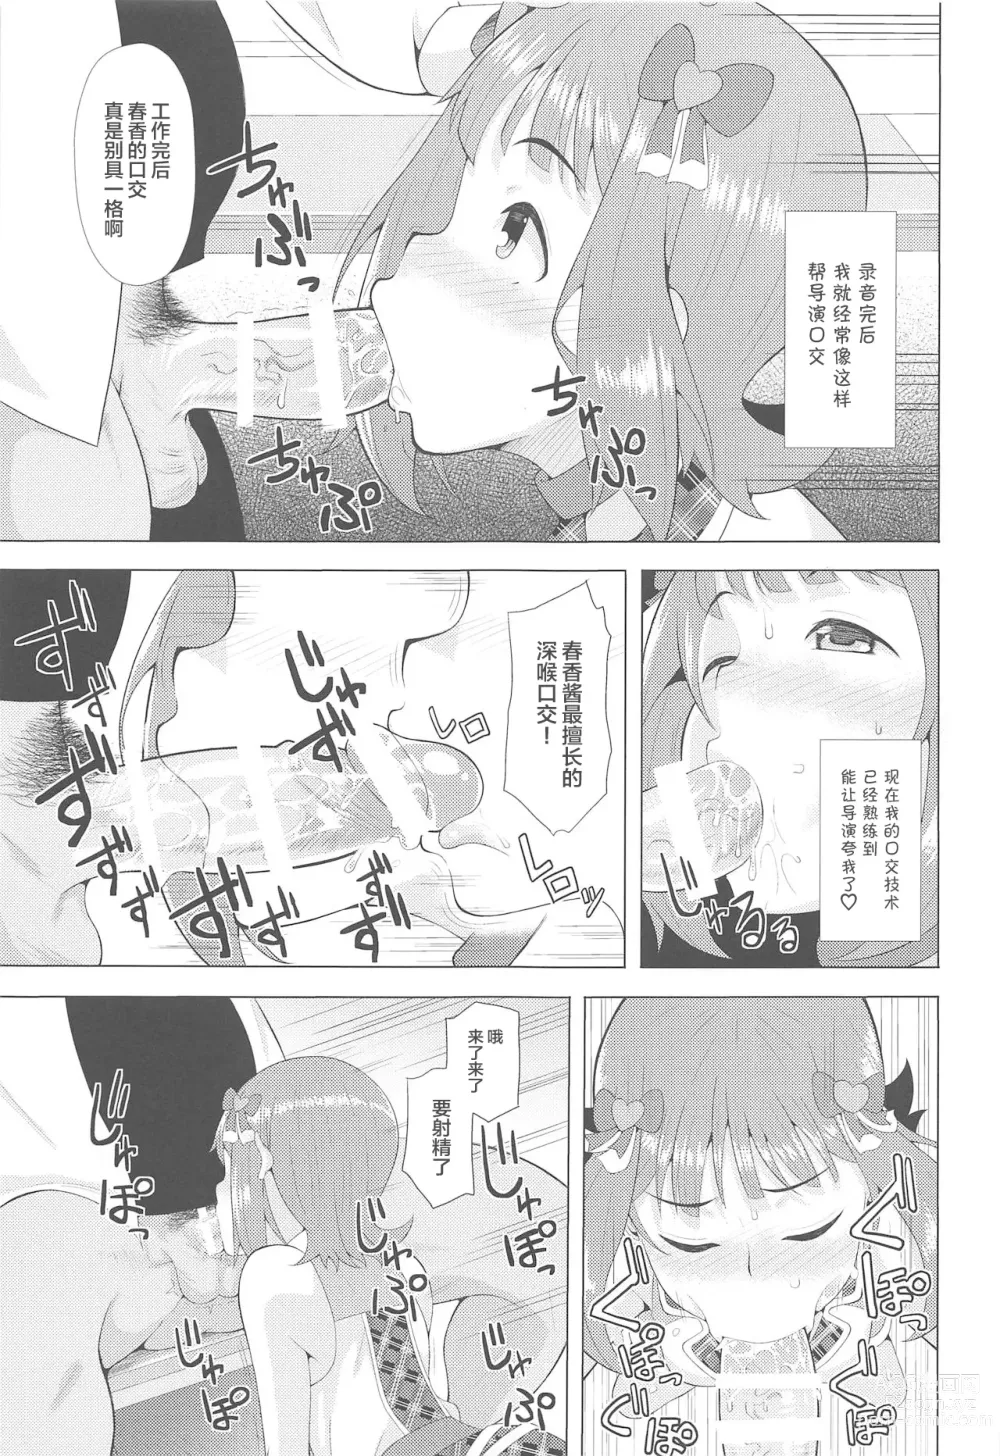 Page 6 of doujinshi Ninki Idol no Renai Jijou ~Amami Haruka no Baai~